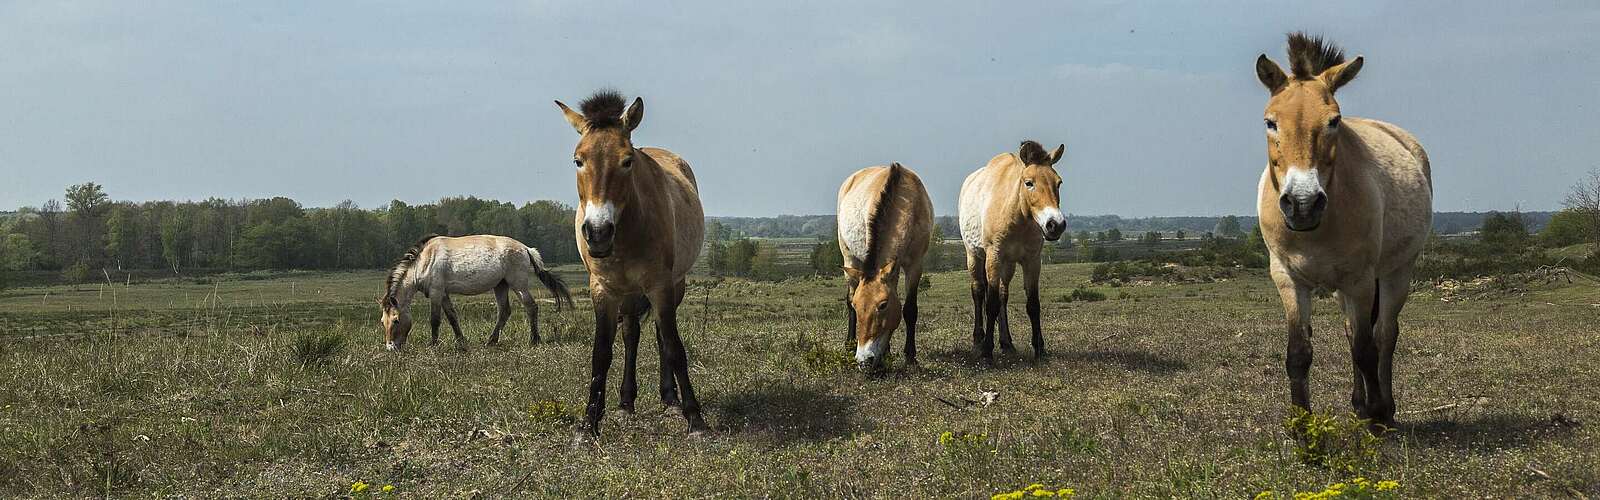 Przewalski-Pferde in Sielmanns Naturlandschaft Döberitzer Heide,
        
    

        Foto: TMB-Fotoarchiv/Steffen Lehmann